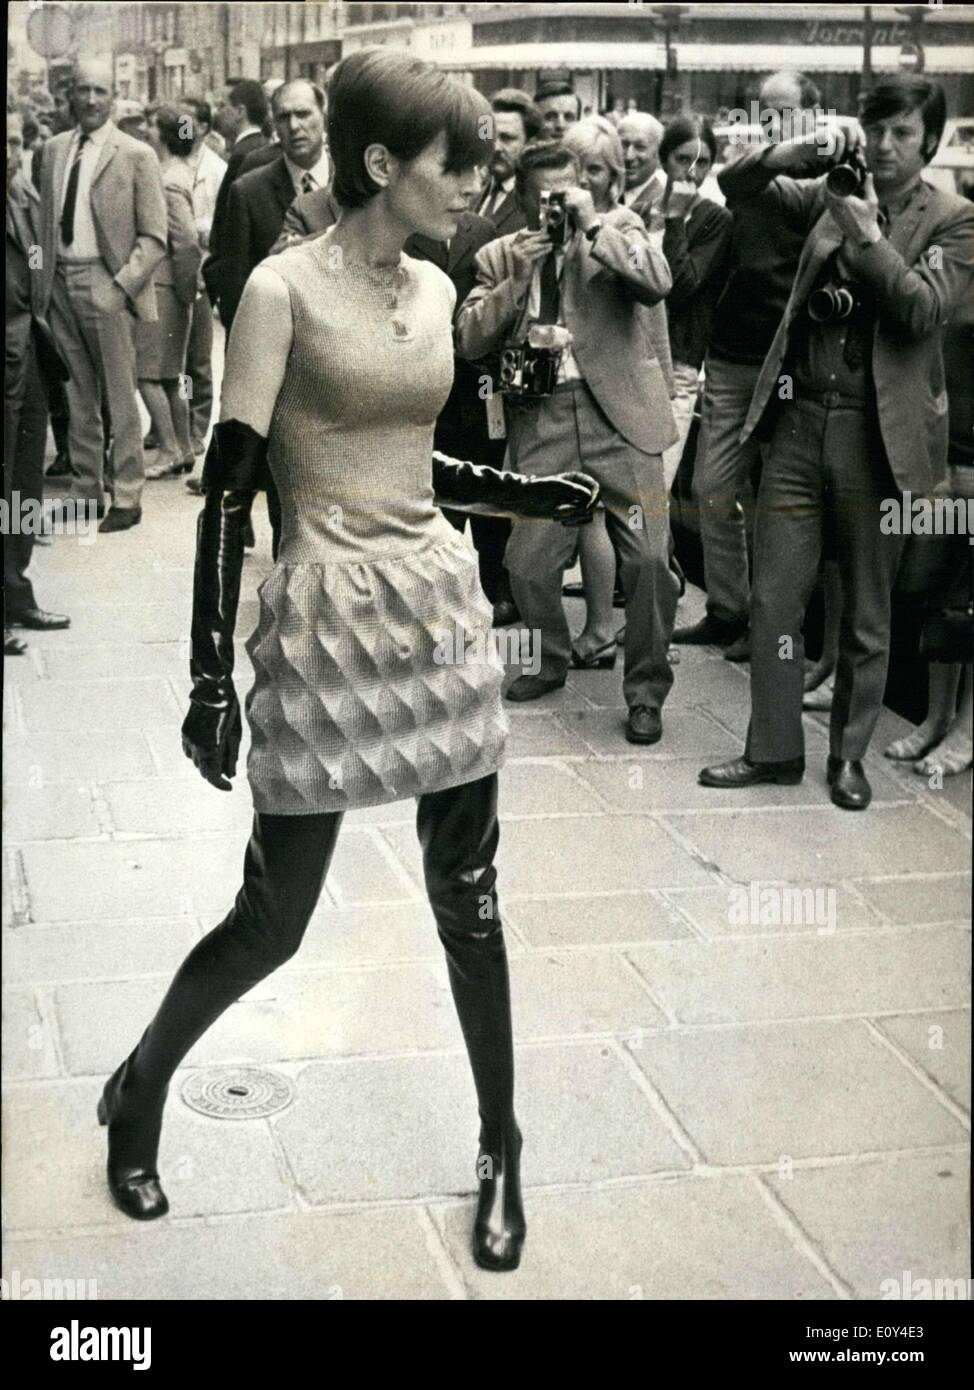 Juillet 26, 1968 - Pierre Cardin, révolutionné le monde de style en  présentant son ''cardines,'' équipé à bas prix robes qui lui permettent de  les vendre à des prix inférieurs. Le principe